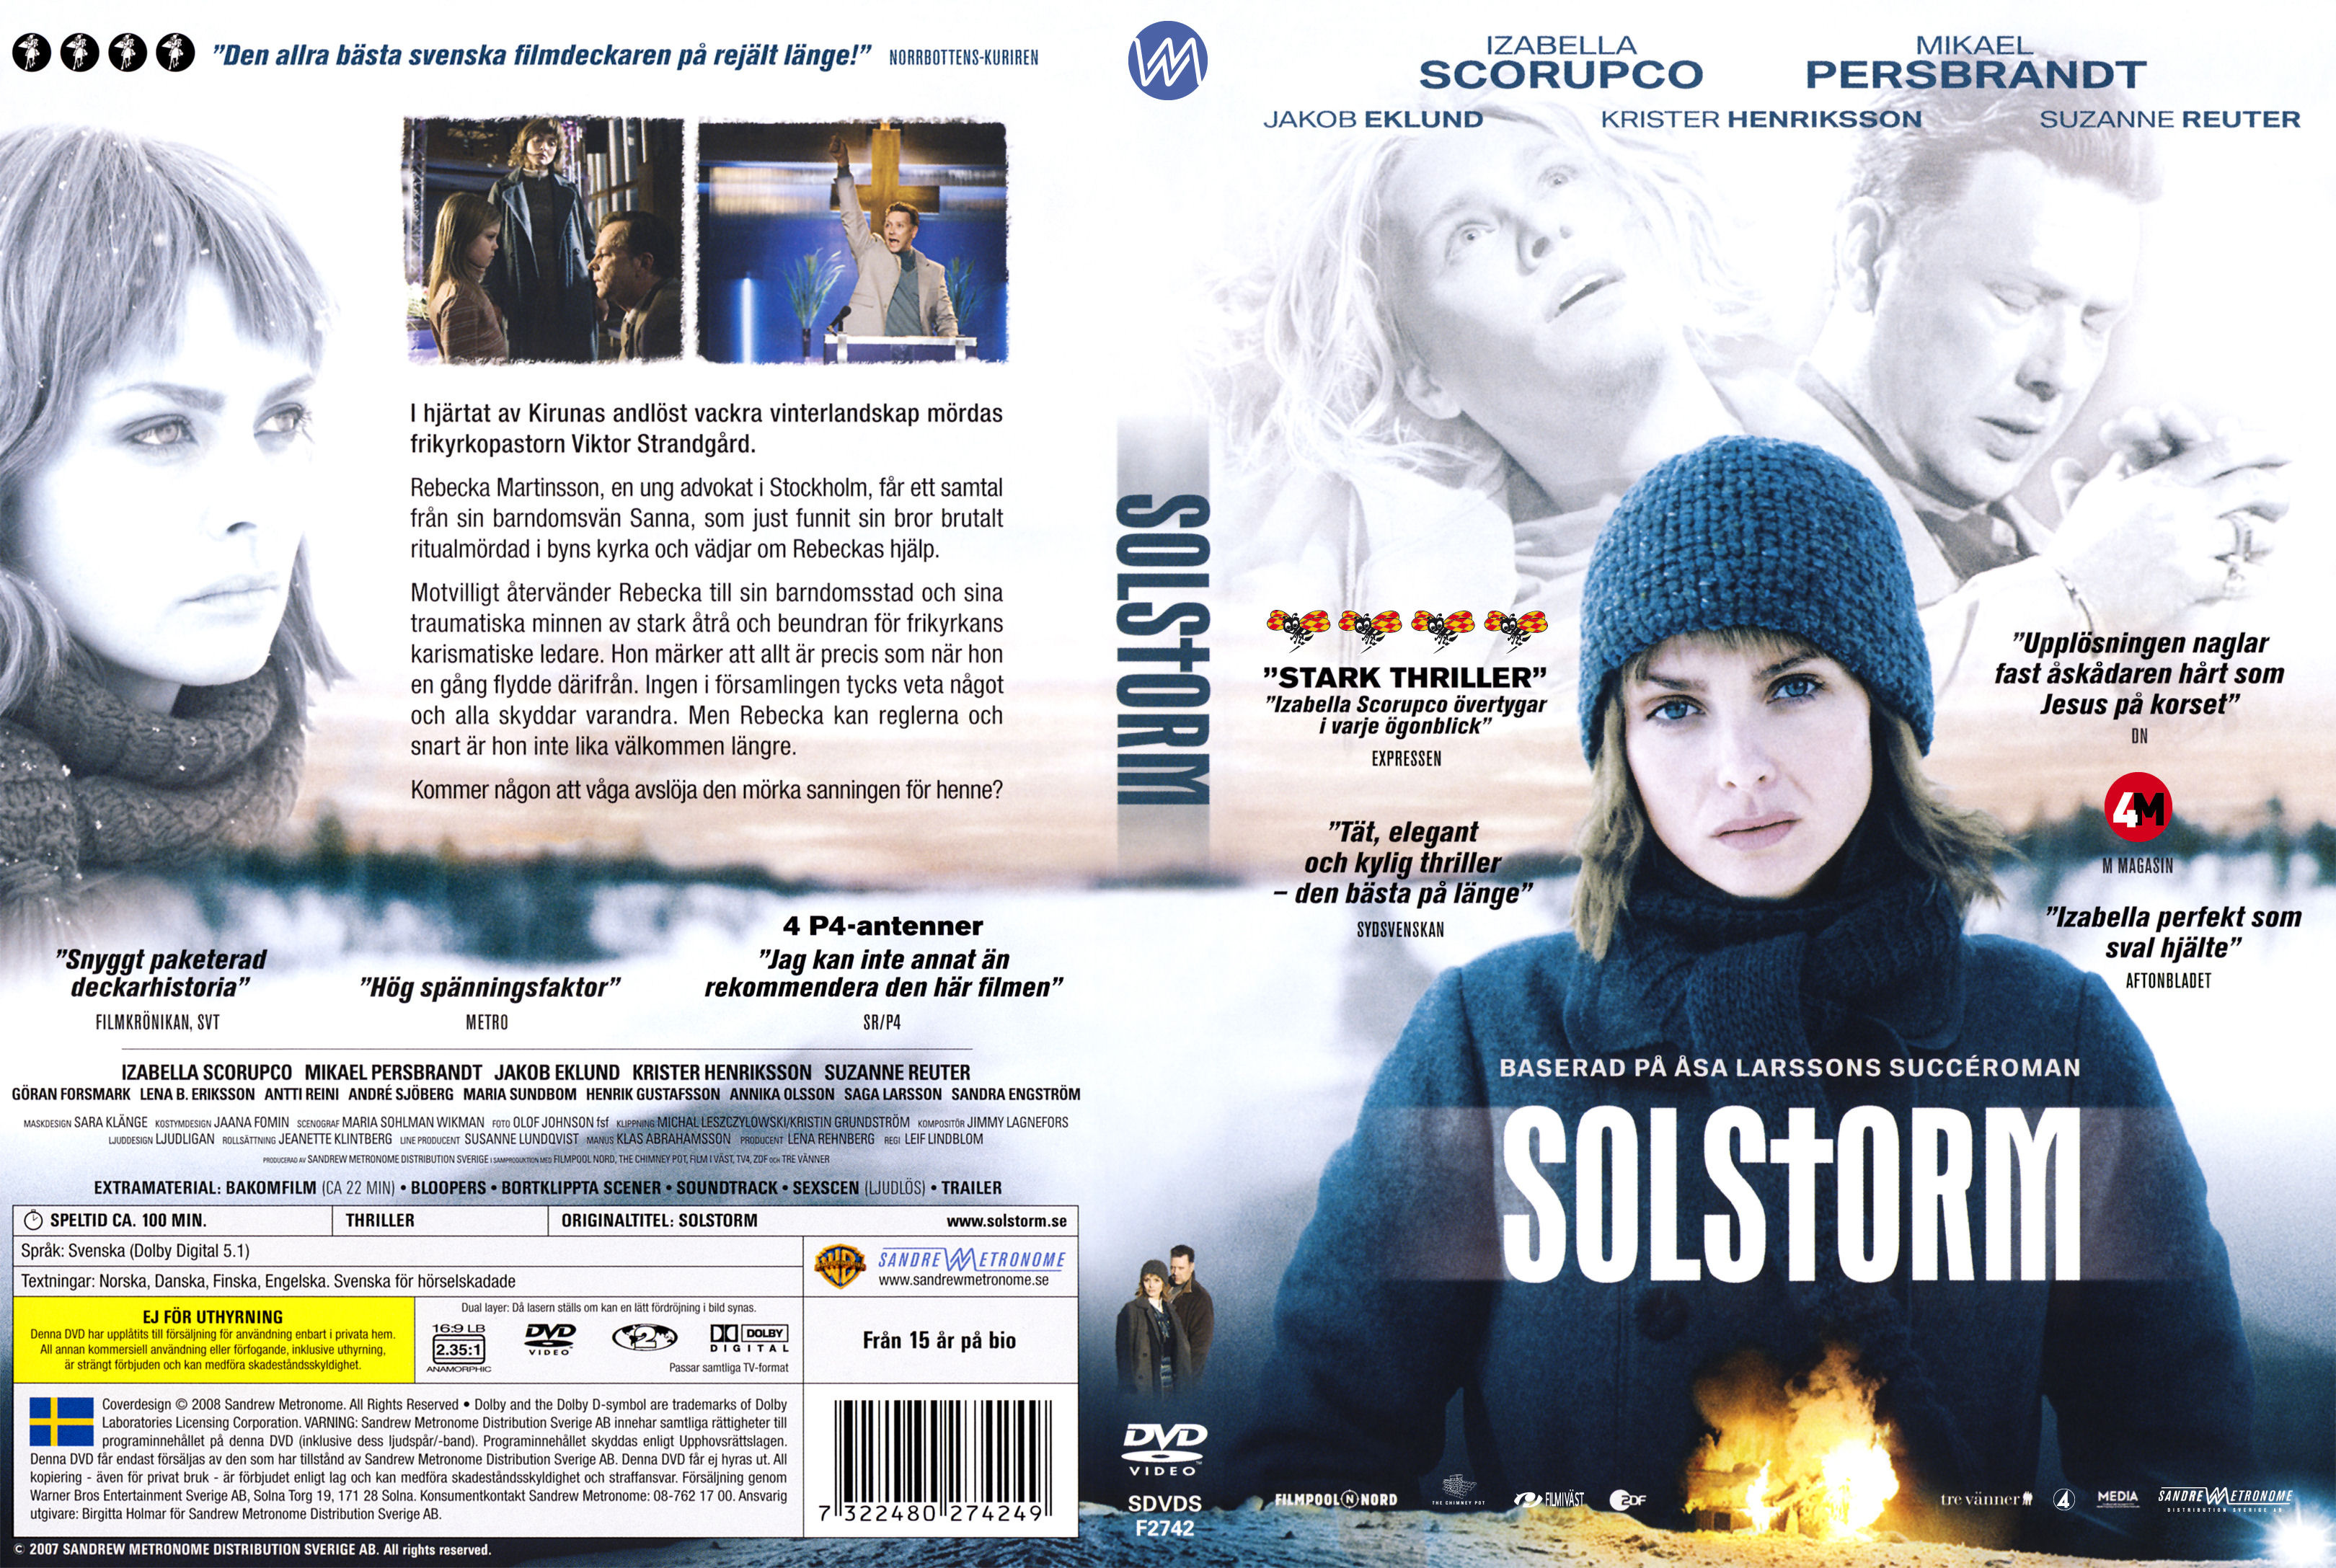 Solstorm 2007